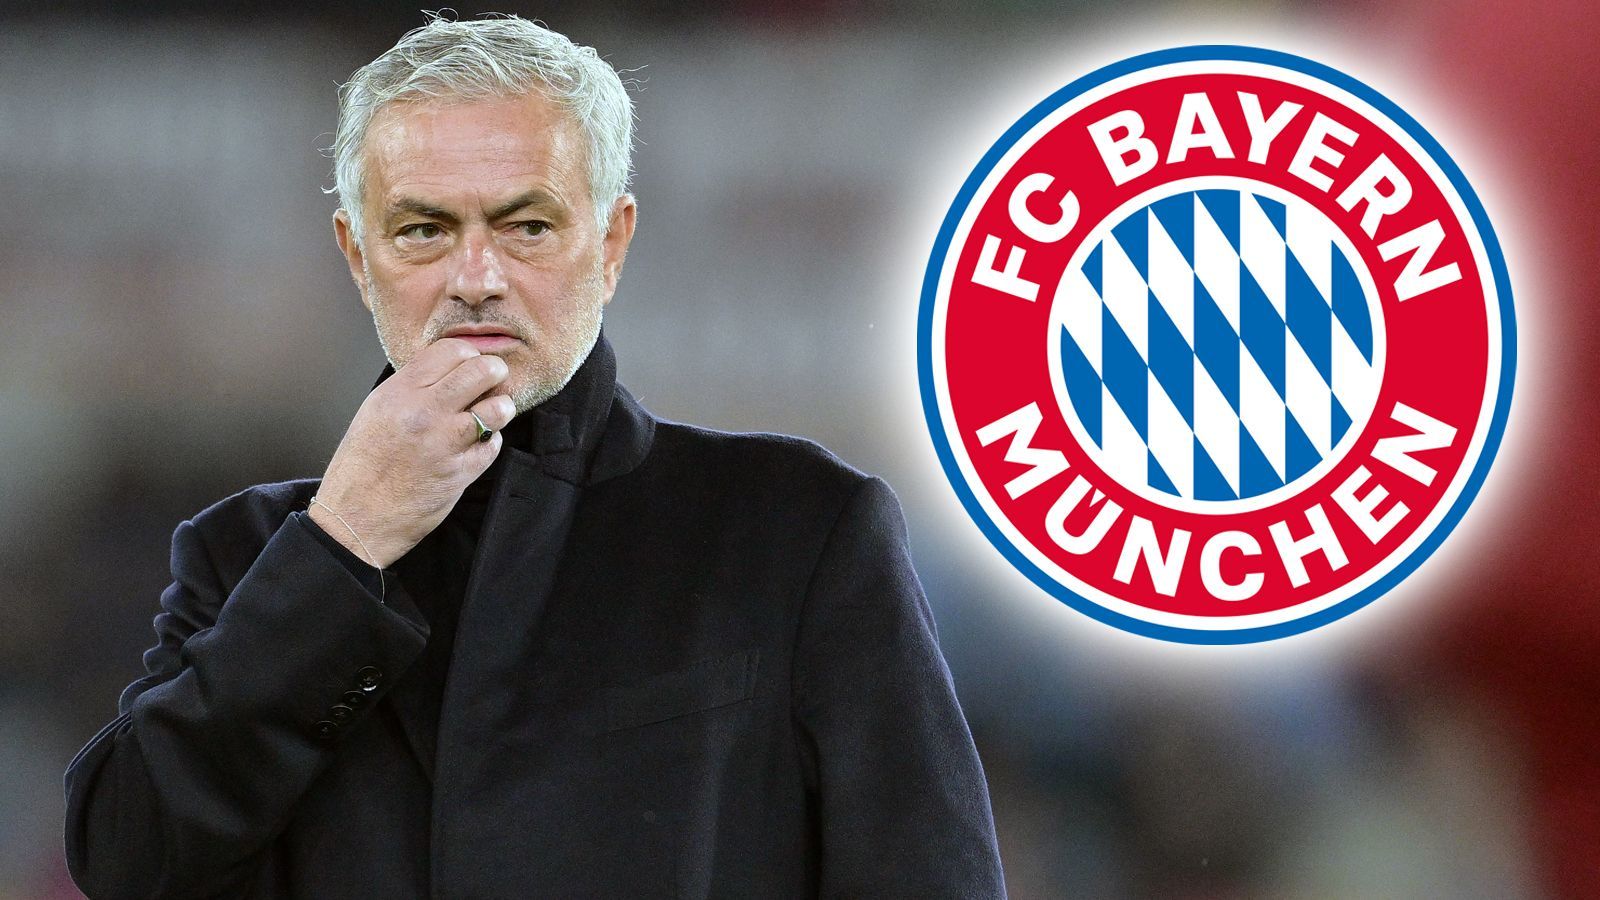 <strong>Jose Mourinho (vereinslos)</strong><br>... dem Bericht nach nämlich "Bock auf Bayern", schielt also wohl auf eine mögliche Tuchel-Nachfolge in München. "The Special One" soll sogar schon Deutsch lernen, wie es im Bericht weiter heißt. Im Oktober 2023 machten Fake-Zitate von Mourinho die Runde bezüglich eines Engagements beim FCB. Mit "Ein Verein, der für mich besonders heraussticht, ist Bayern München", wurde er zitiert. Eine Aussage, die sich nun im Nachhinein bewahrheiten könnte.